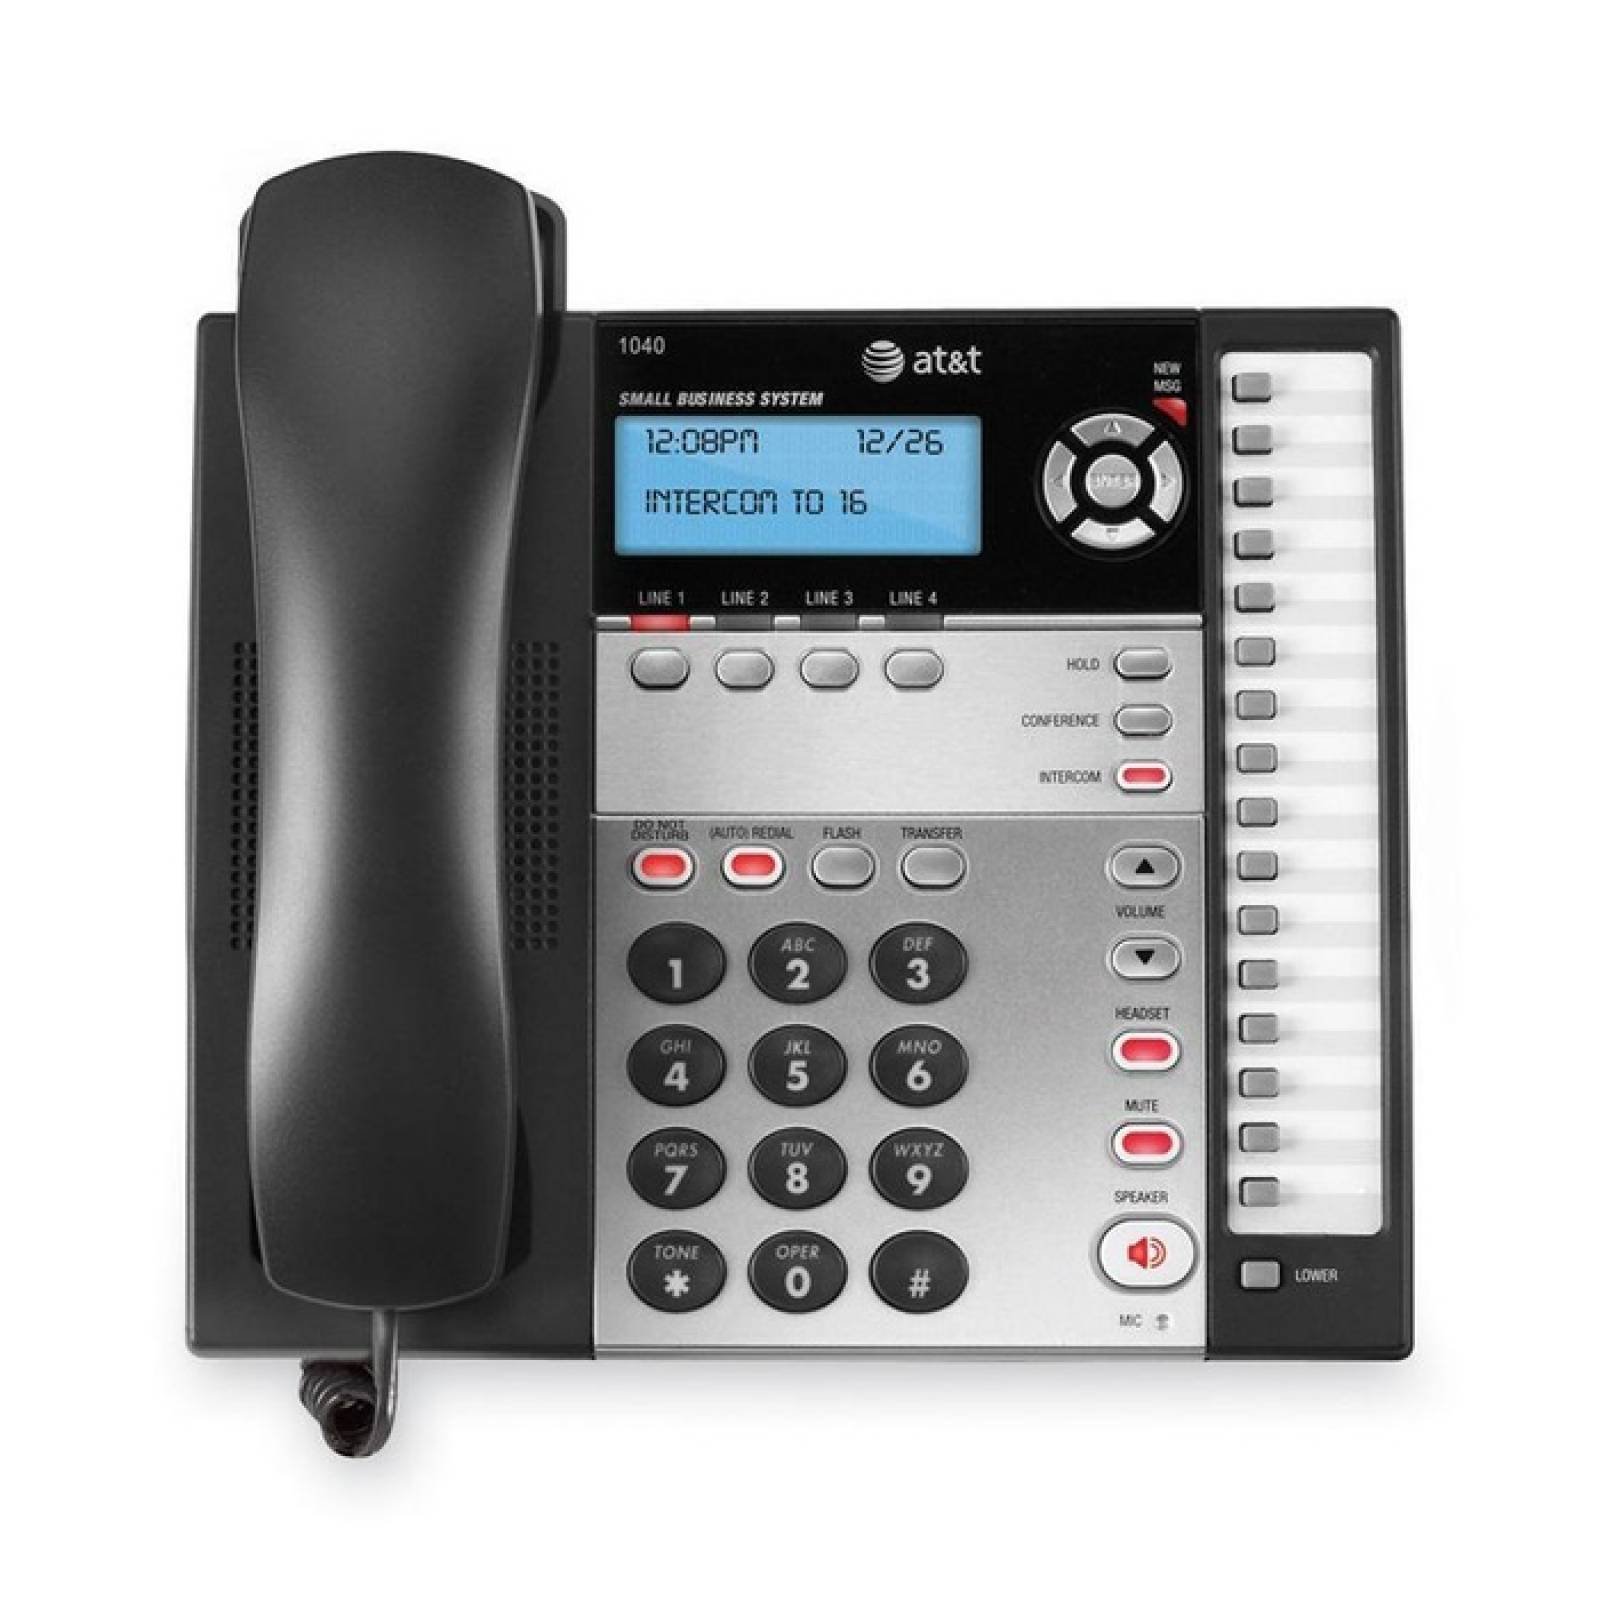 ATampT 1040 Telfono para pequeas empresas con cable y expandible de 4 lneas